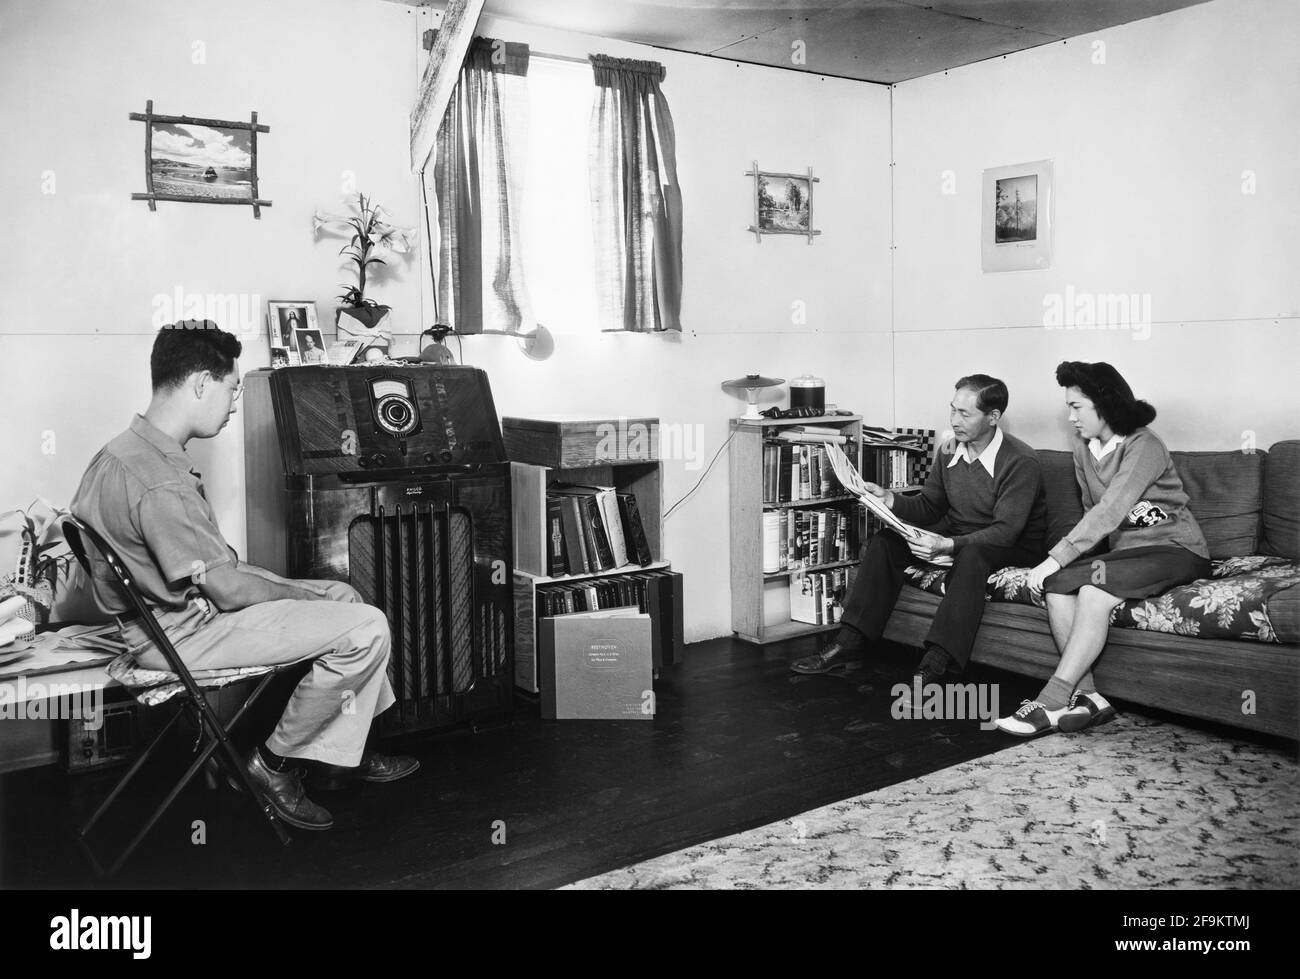 Francis Yonemitsu avec sa fille Lucy et son Michael, dans leur salon, Manzanar Relocation Center, Californie, Etats-Unis, Ansel Adams, Collection Manzanar War Relocation Centre, 1943 Banque D'Images